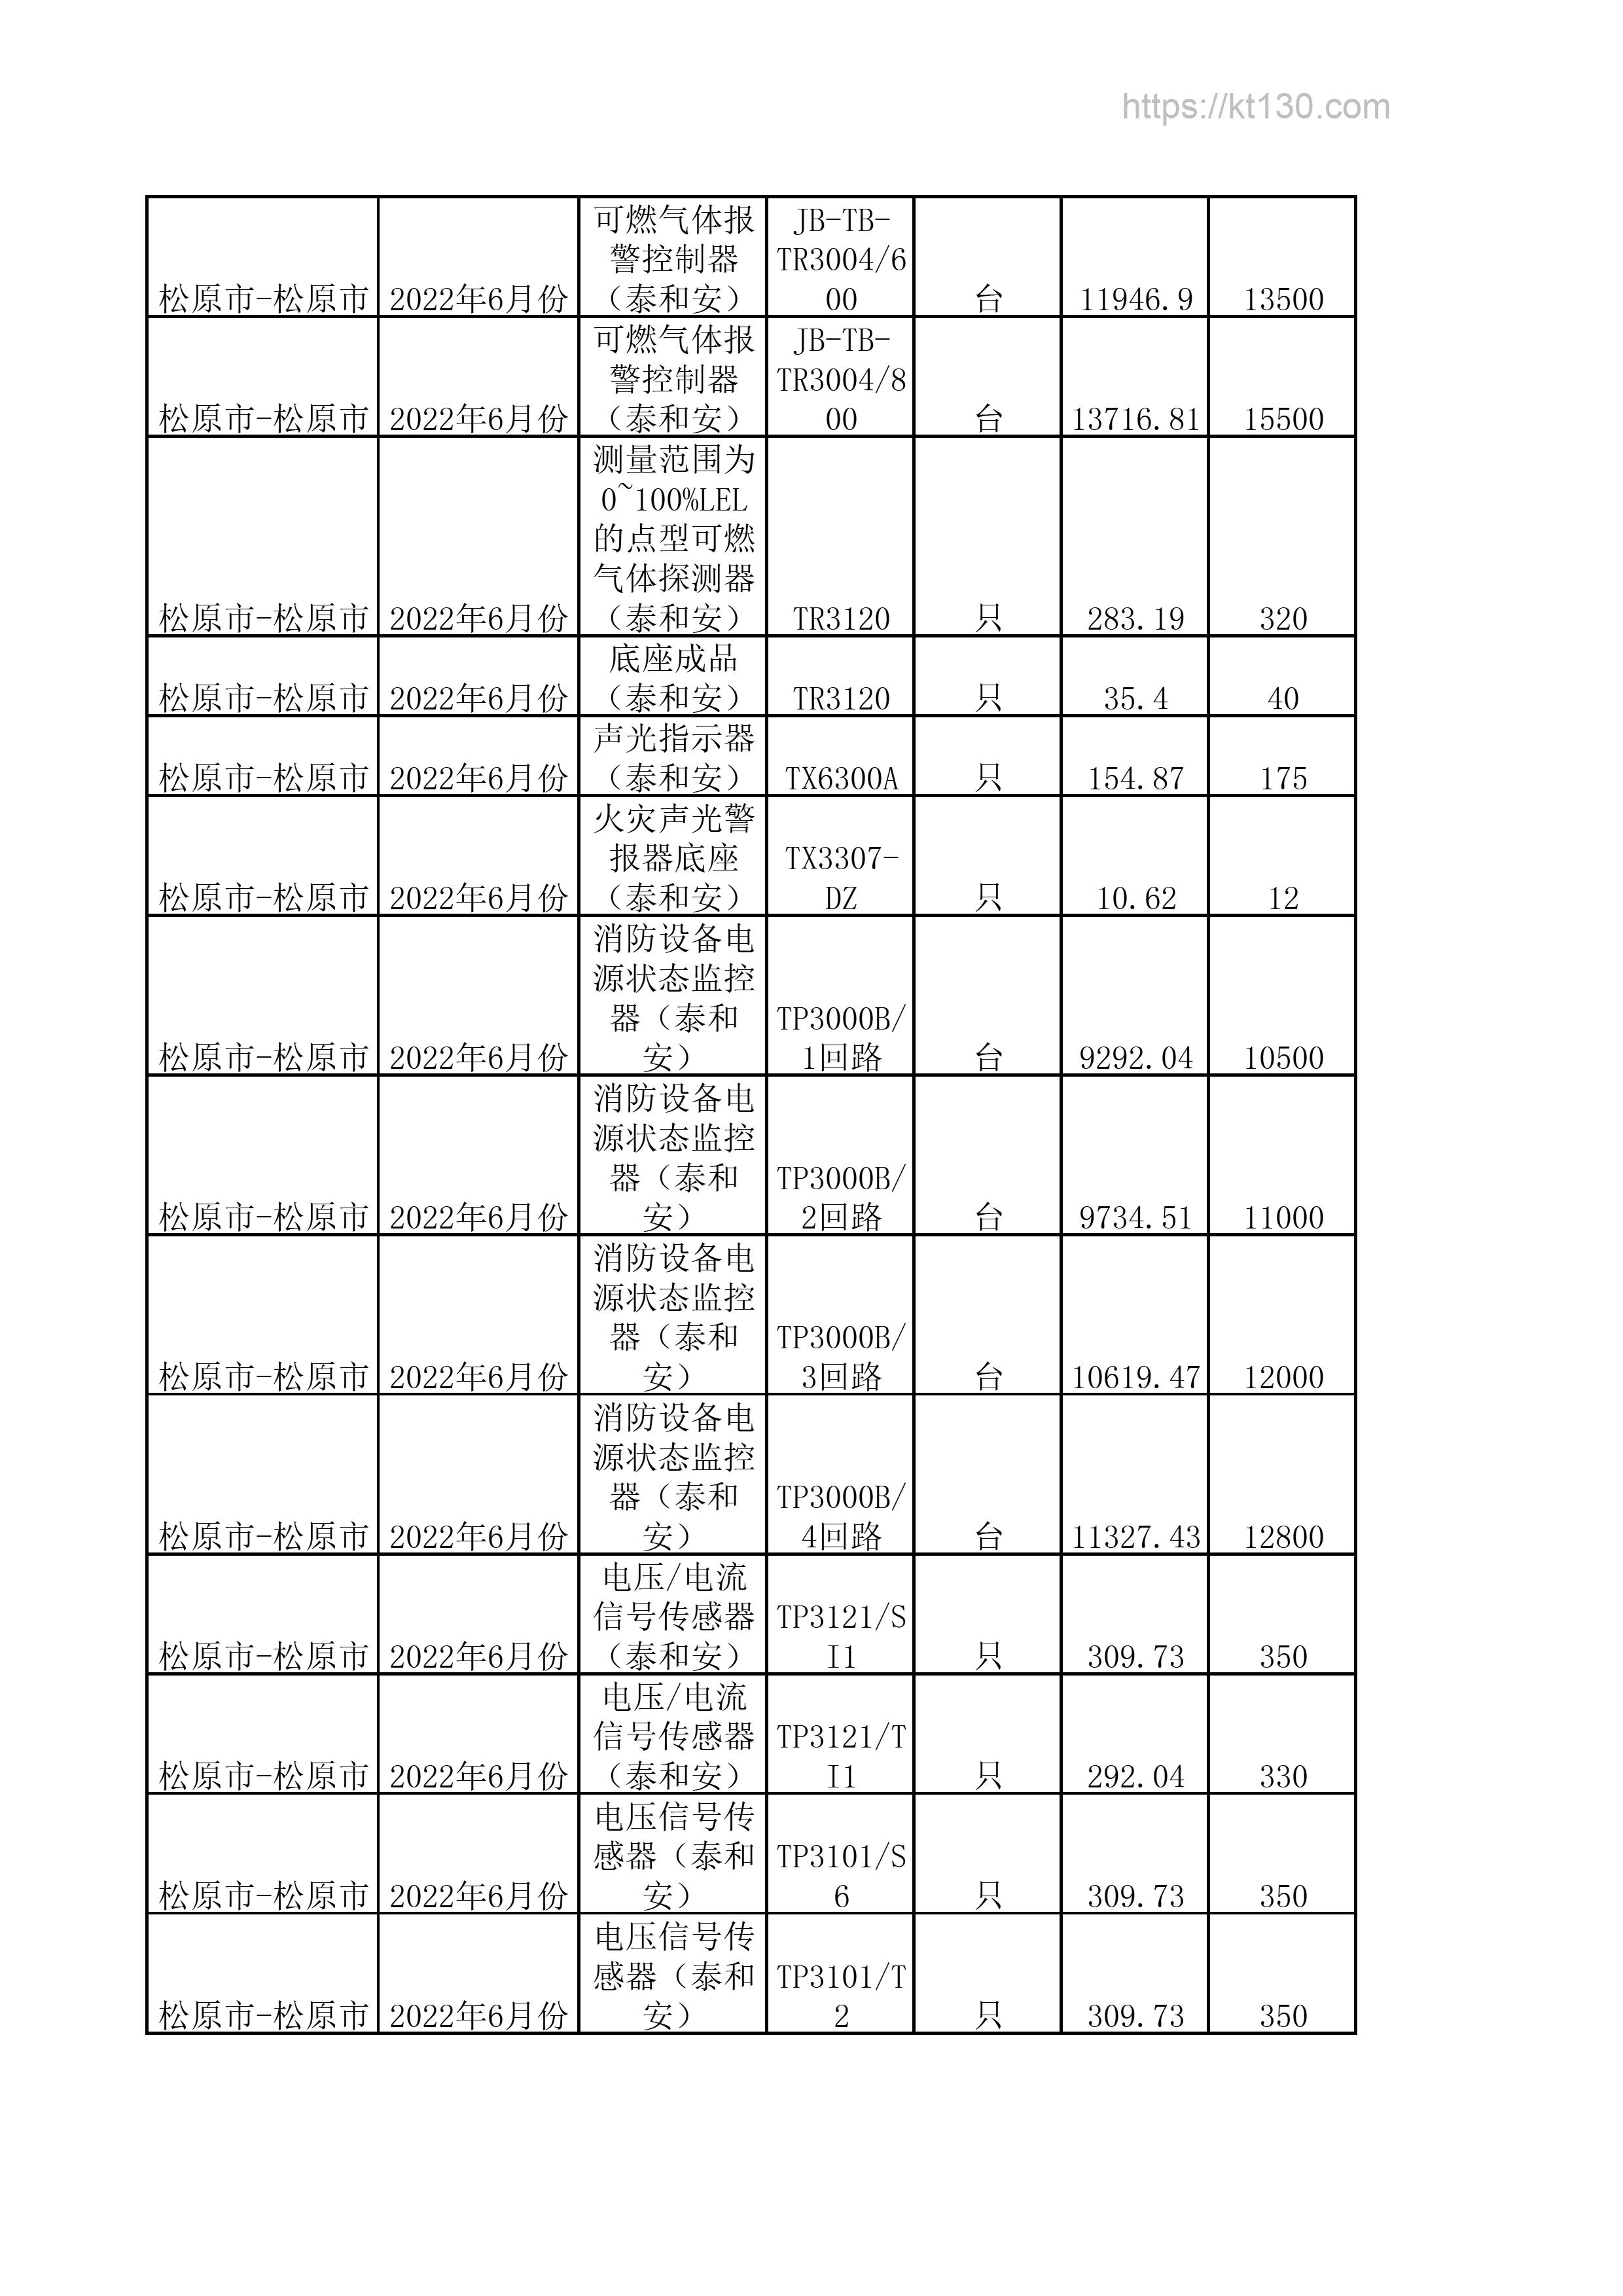 吉林省松原市2022年6月份消防设备电源状态监控器信息价